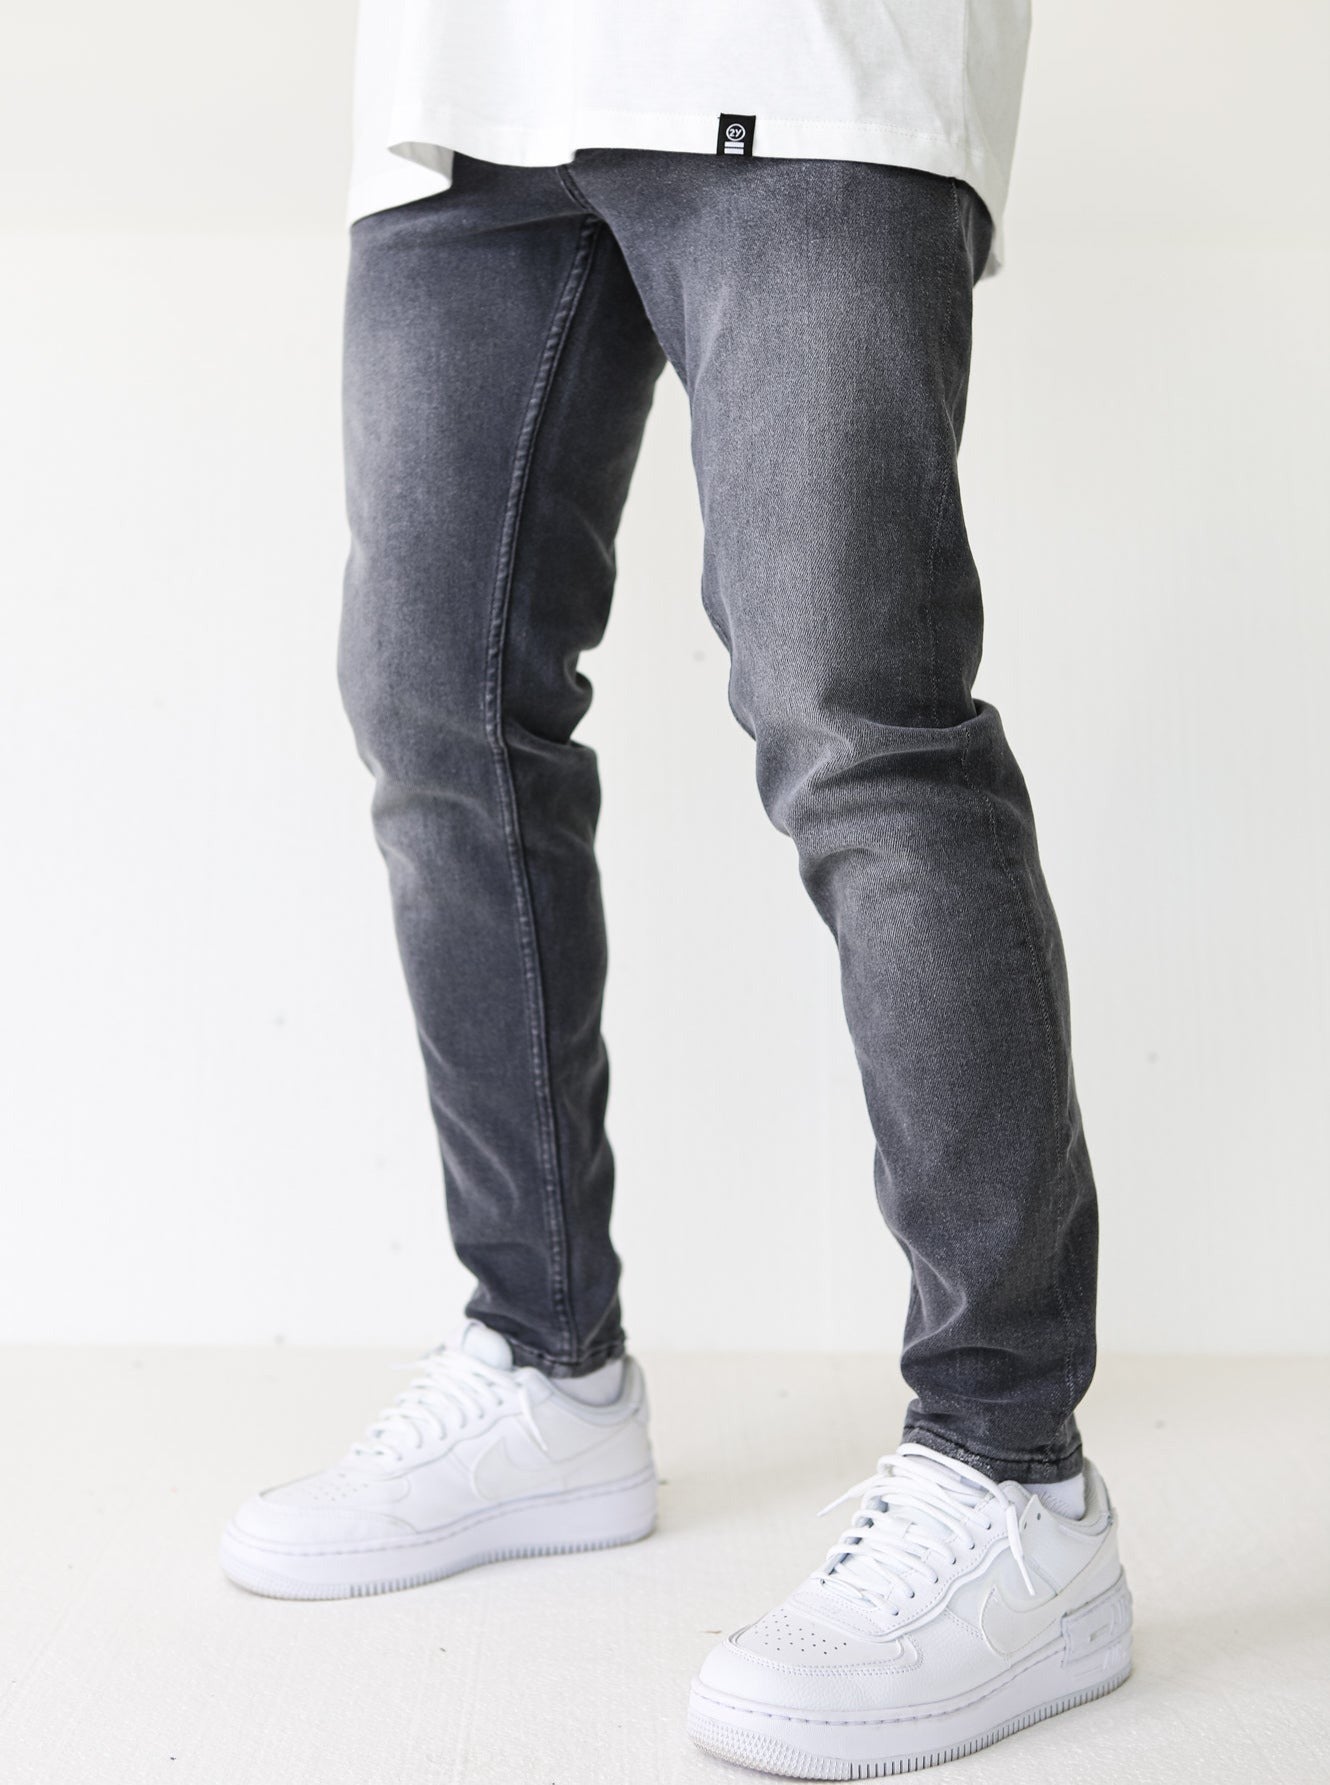 Anthracite Premium Basic Slim-fit Jeans - UNEFFECTED STUDIOS® - JEANS - UNEFFECTED STUDIOS®